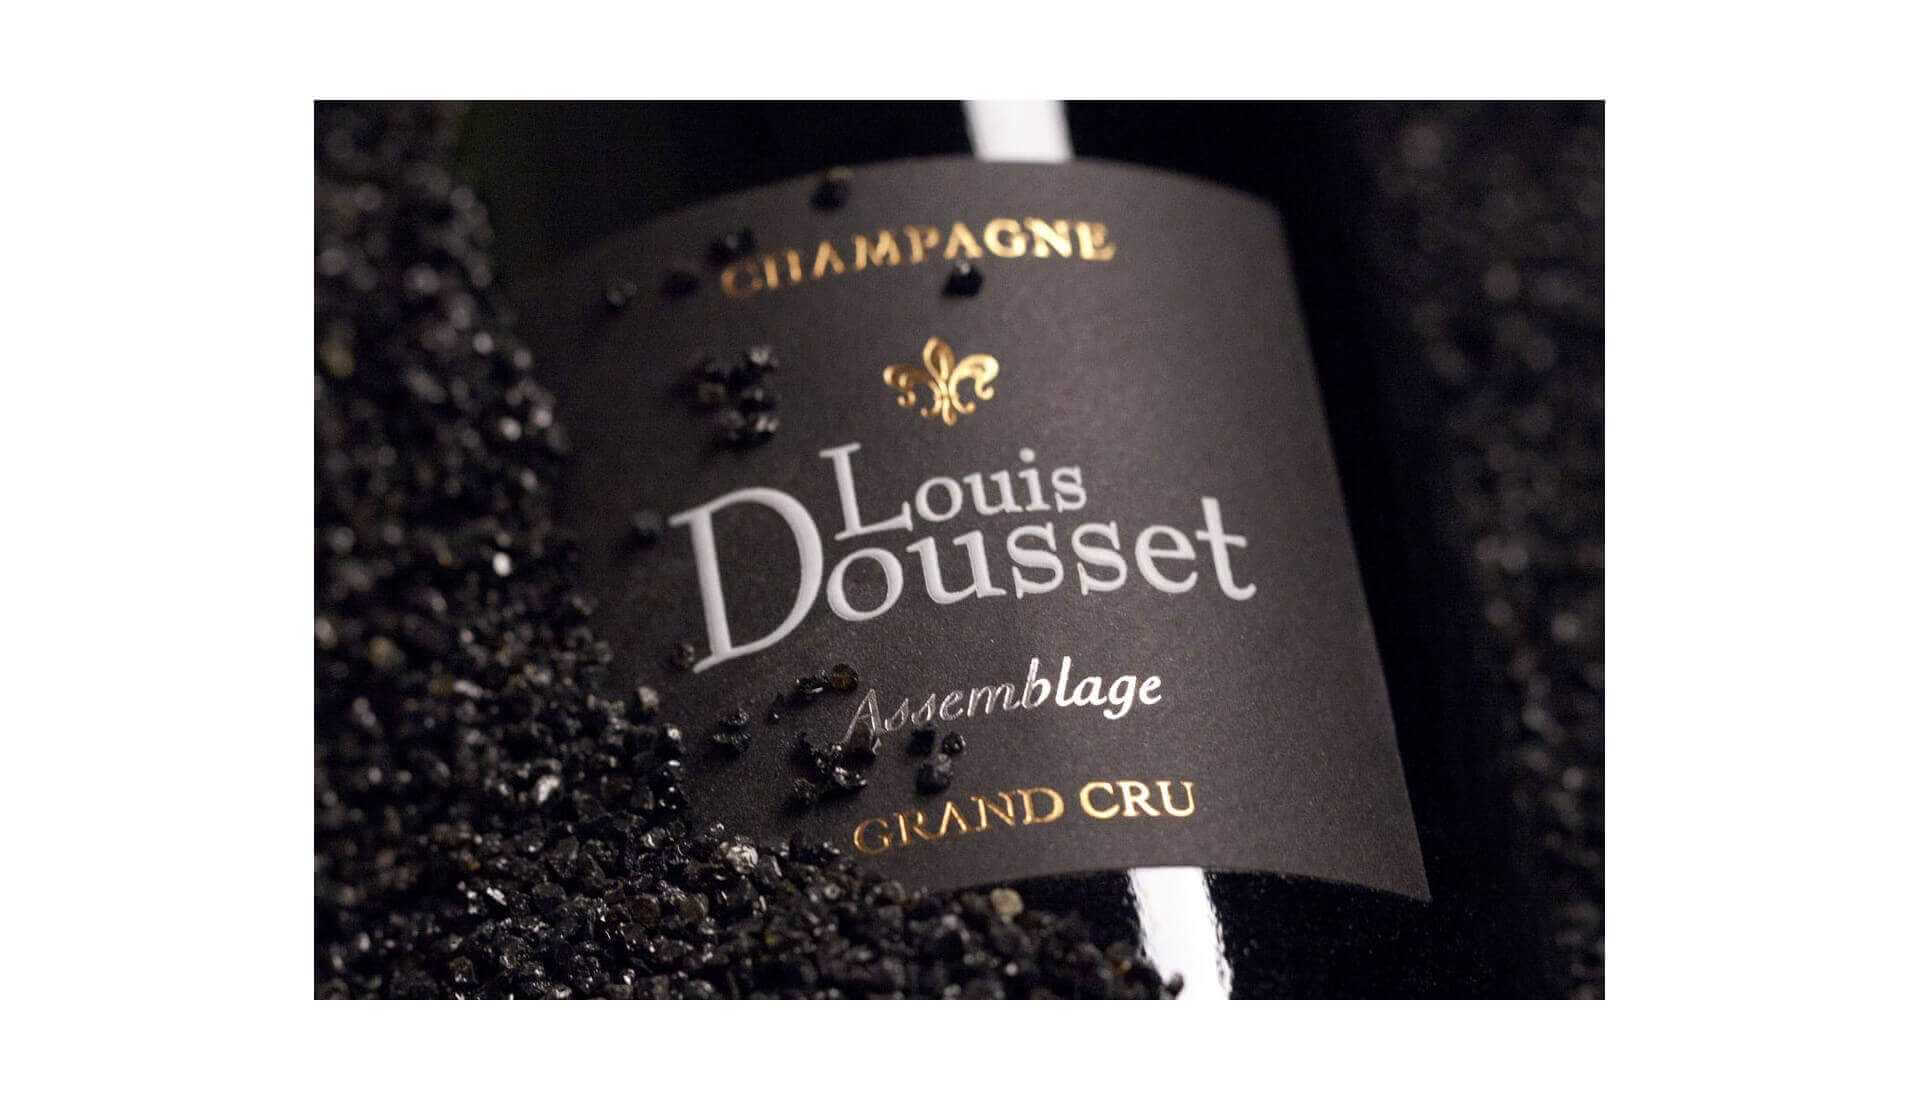 Champagne Louis Dousset Verzenay Grand Cru